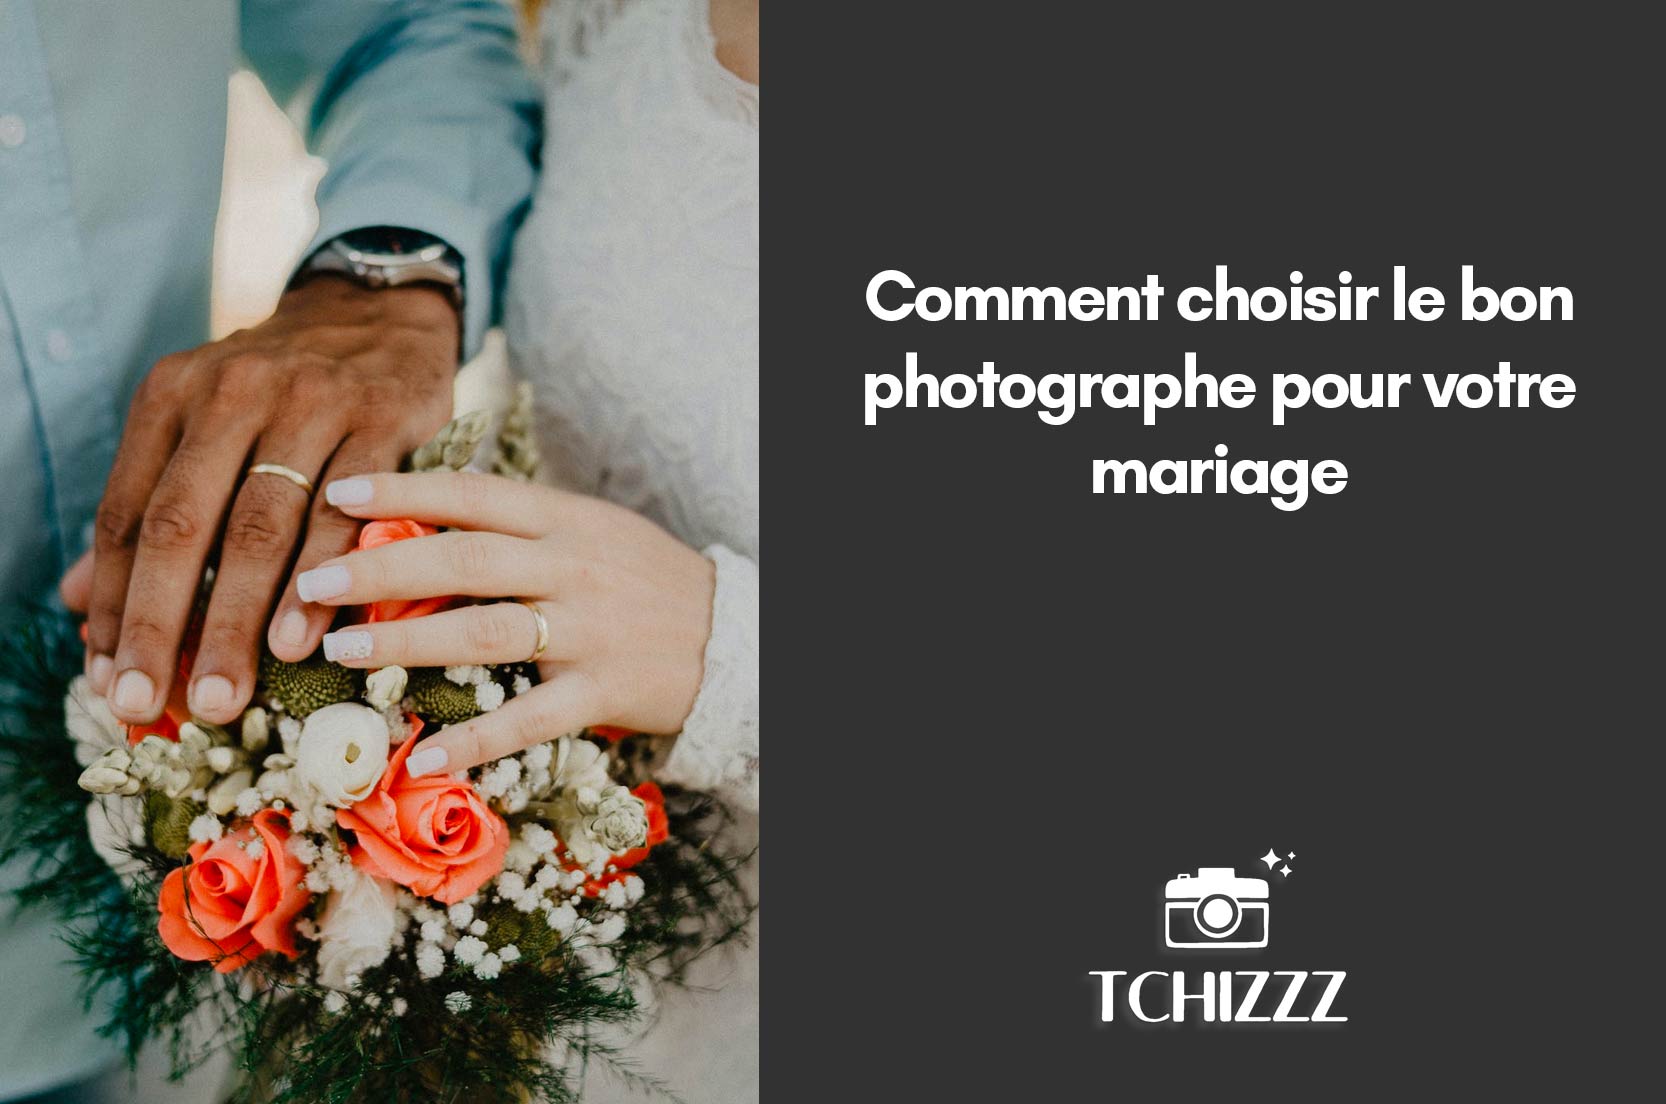 You are currently viewing Comment choisir le bon photographe pour votre mariage